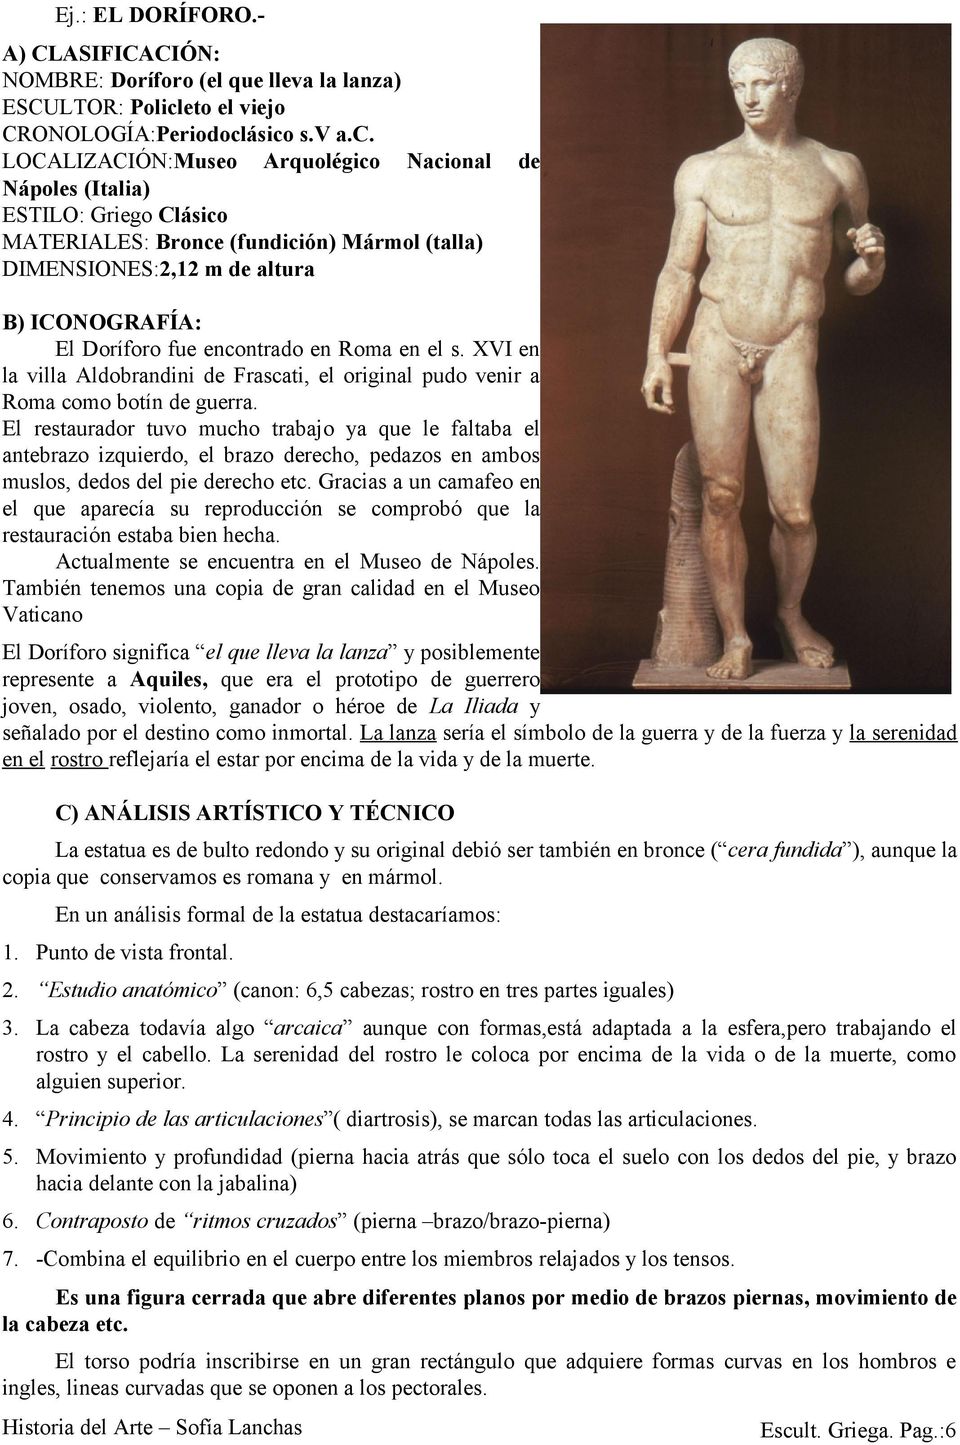 ásico s.v a.c. LOCALIZACIÓN:Museo Arquolégico Nacional Nápoles (Italia) ESTILO: Griego Clásico MATERIALES: Bronce (fundición) Mármol (talla) DIMENSIONES:2,12 m de altura de B) ICONOGRAFÍA: El